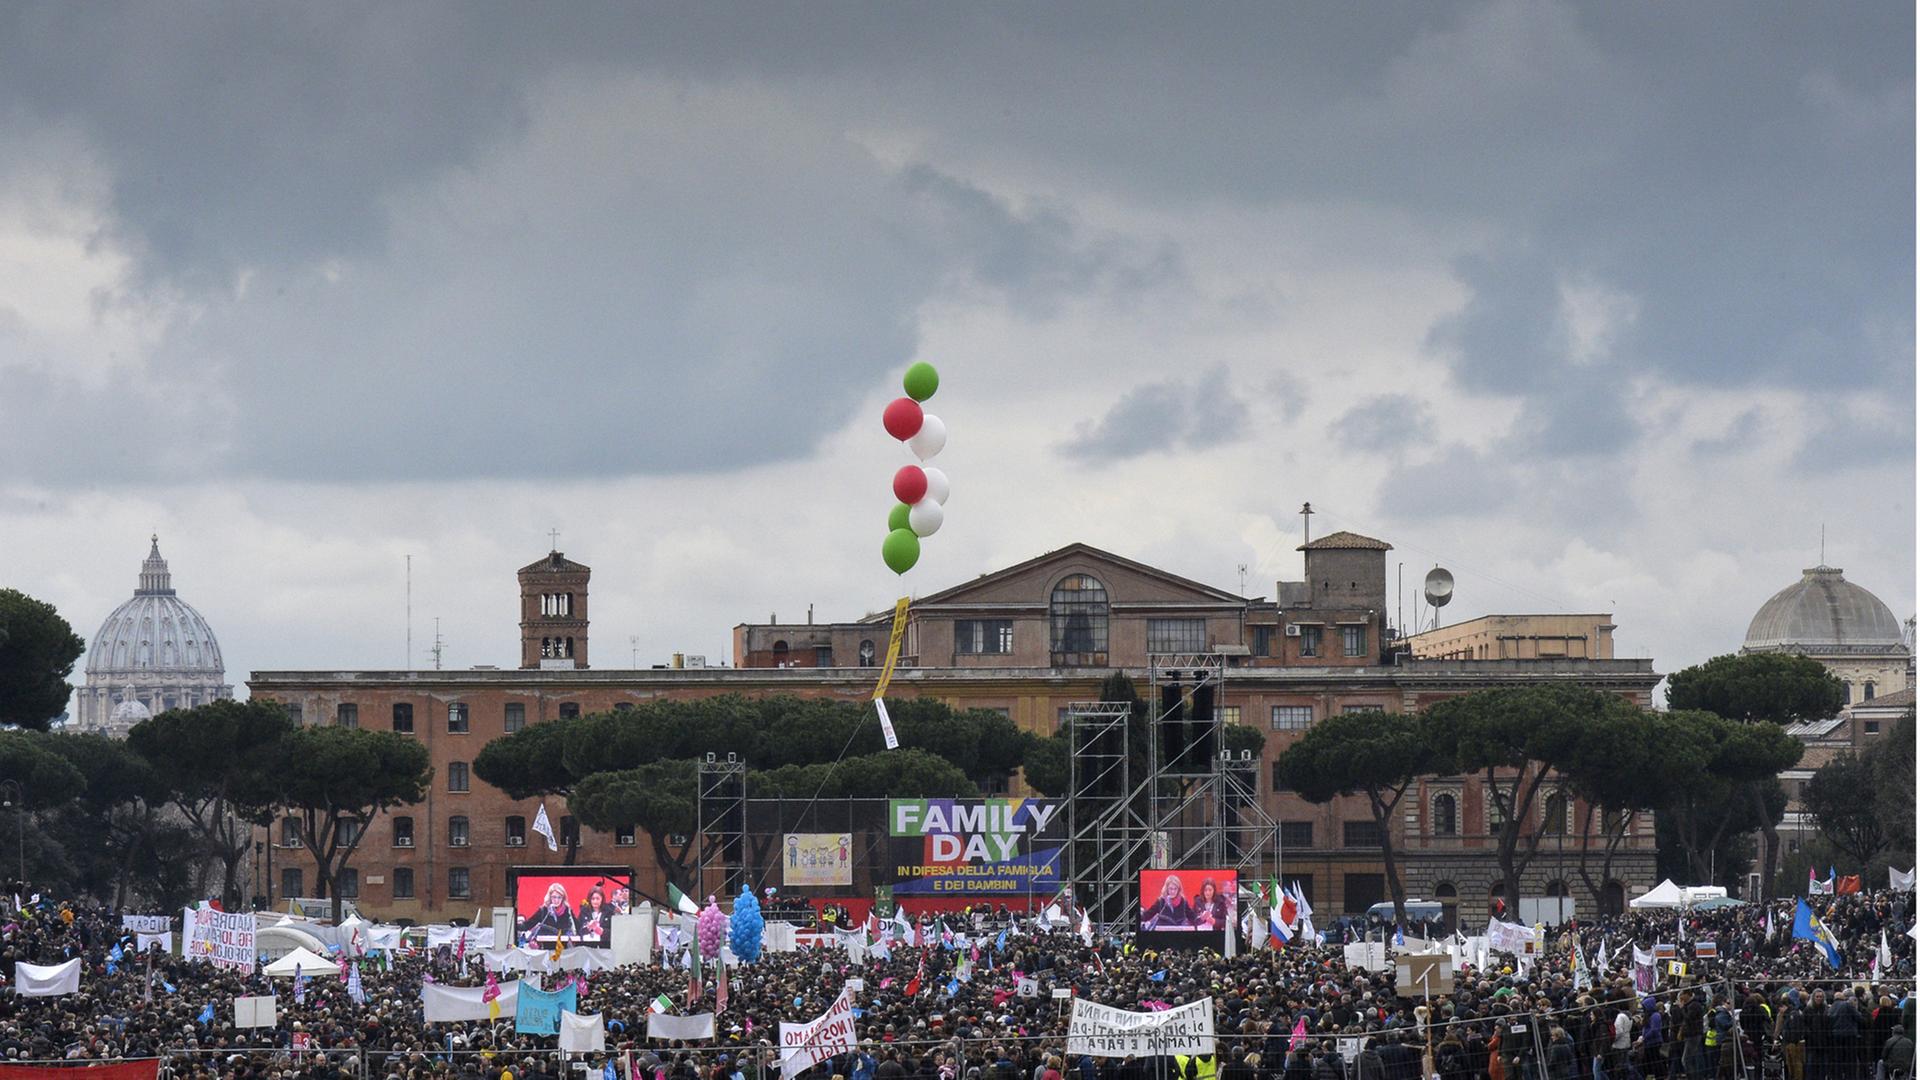 Im Rahmen des sogenannten "Family Day" demonstrieren am 30.01.2016 Menschen im römer Circus Maximus gegen die Pläne der italienischen Regierung, gleichgeschlechtliche Partnerschaften anzuerkennen.